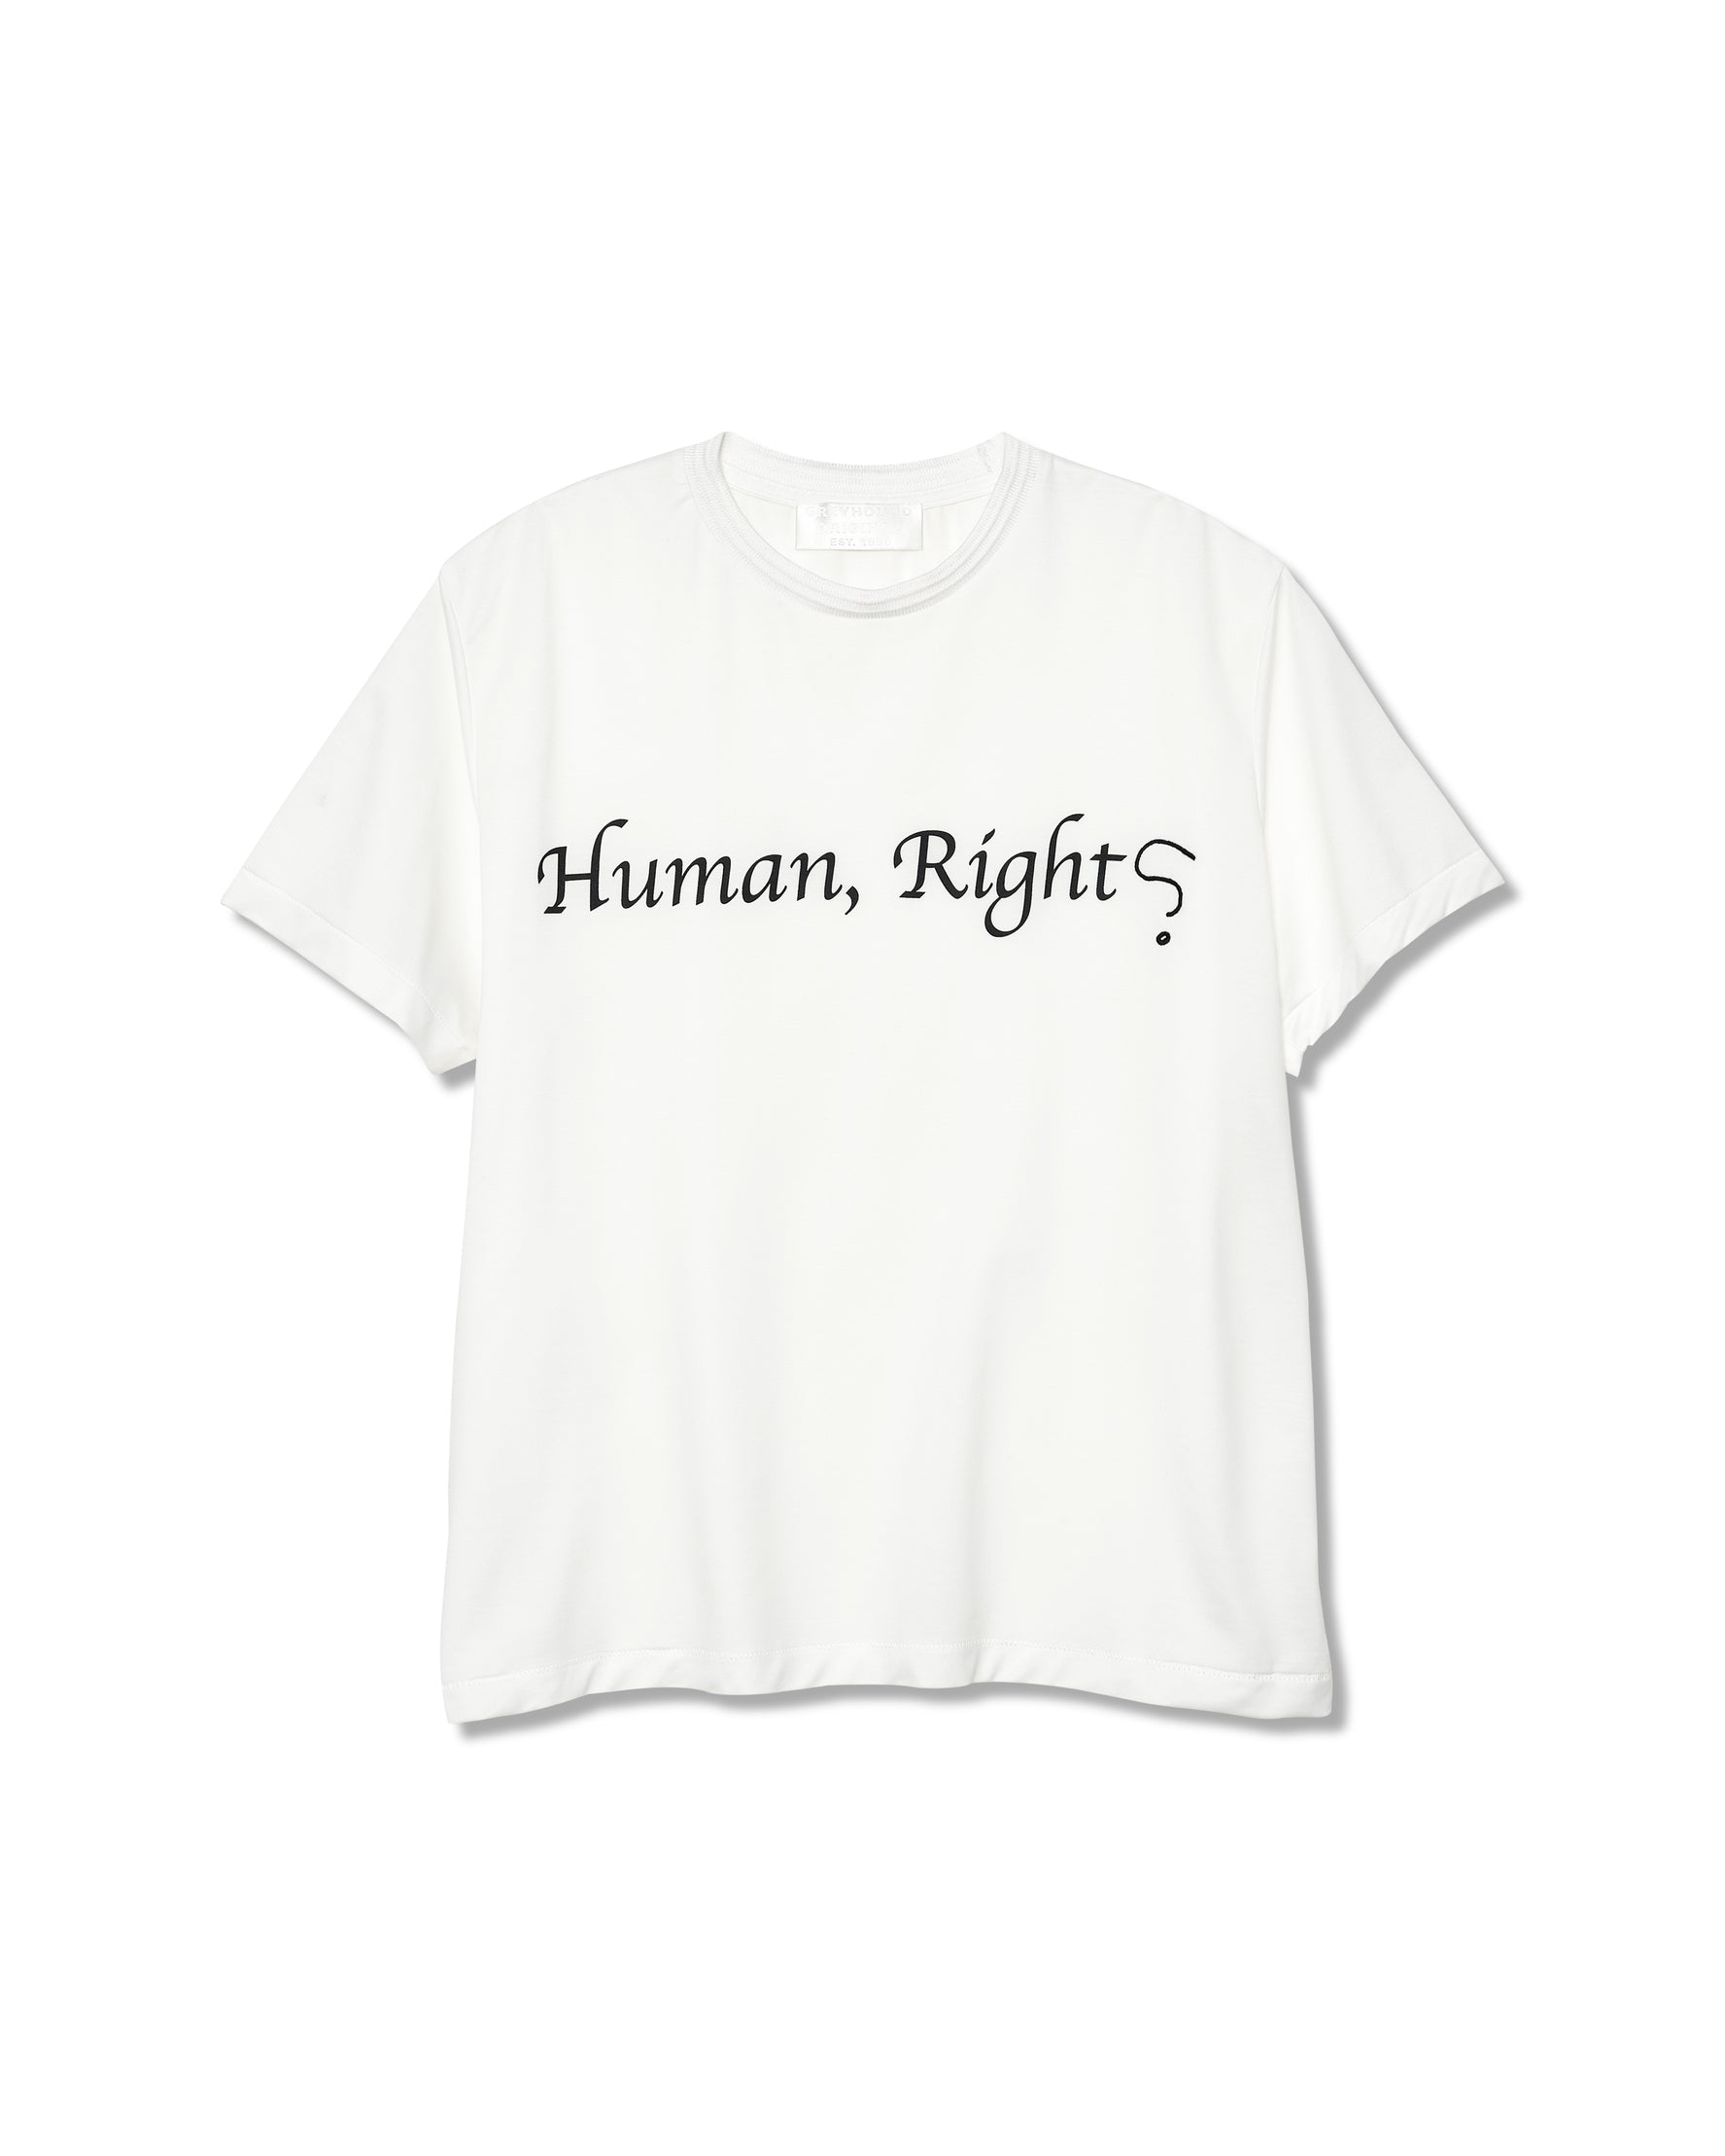 Human Rights? T-Shirt